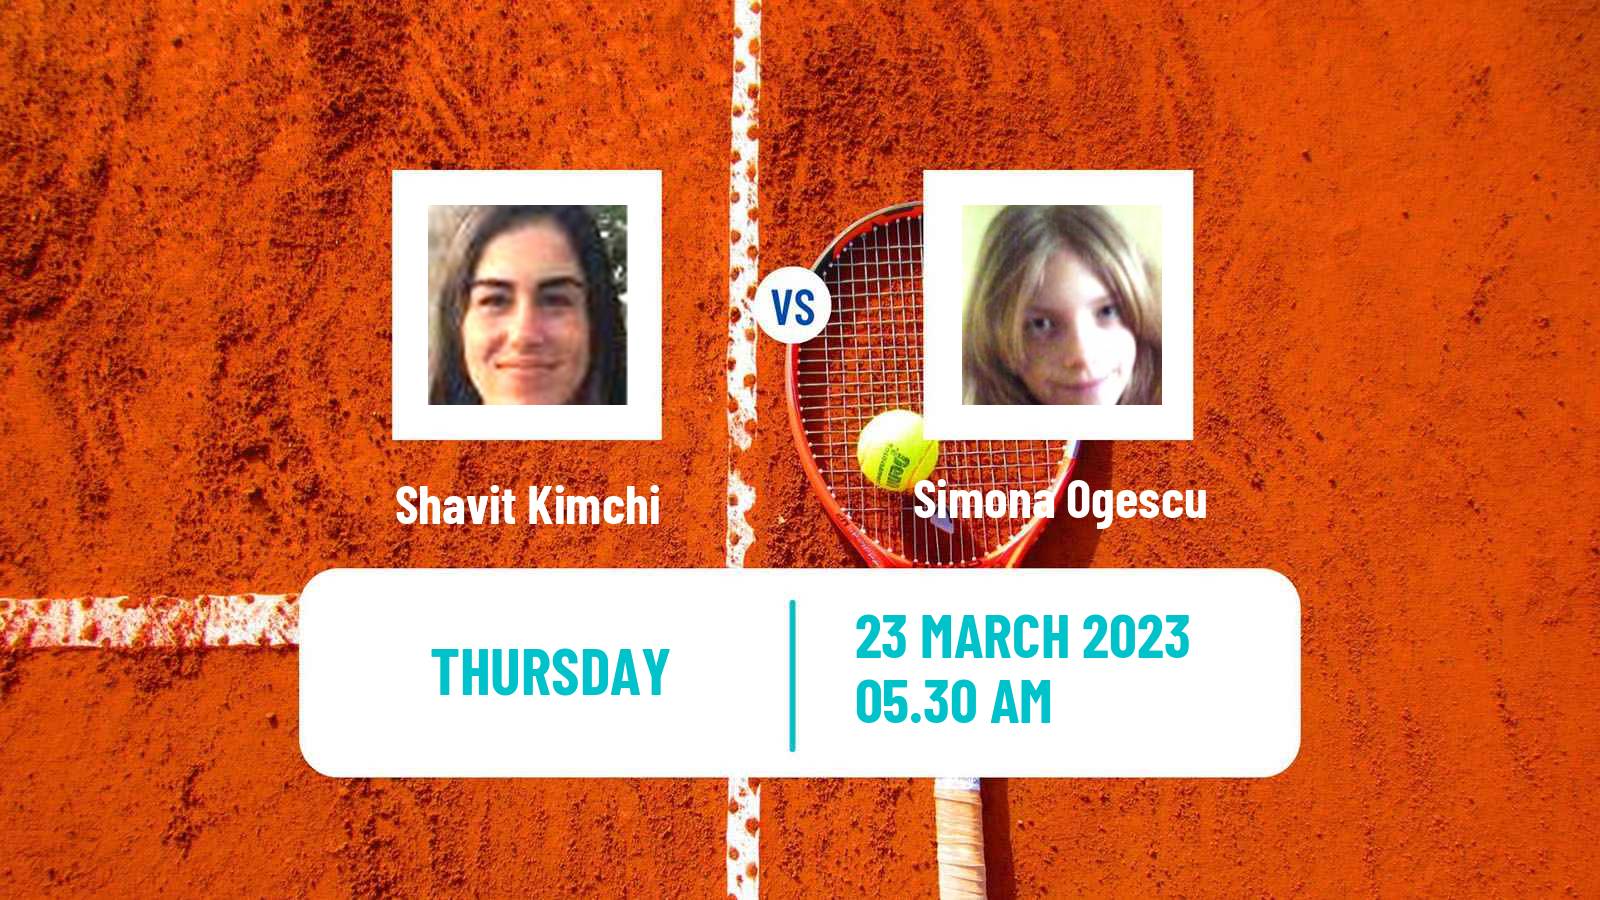 Tennis ITF Tournaments Shavit Kimchi - Simona Ogescu